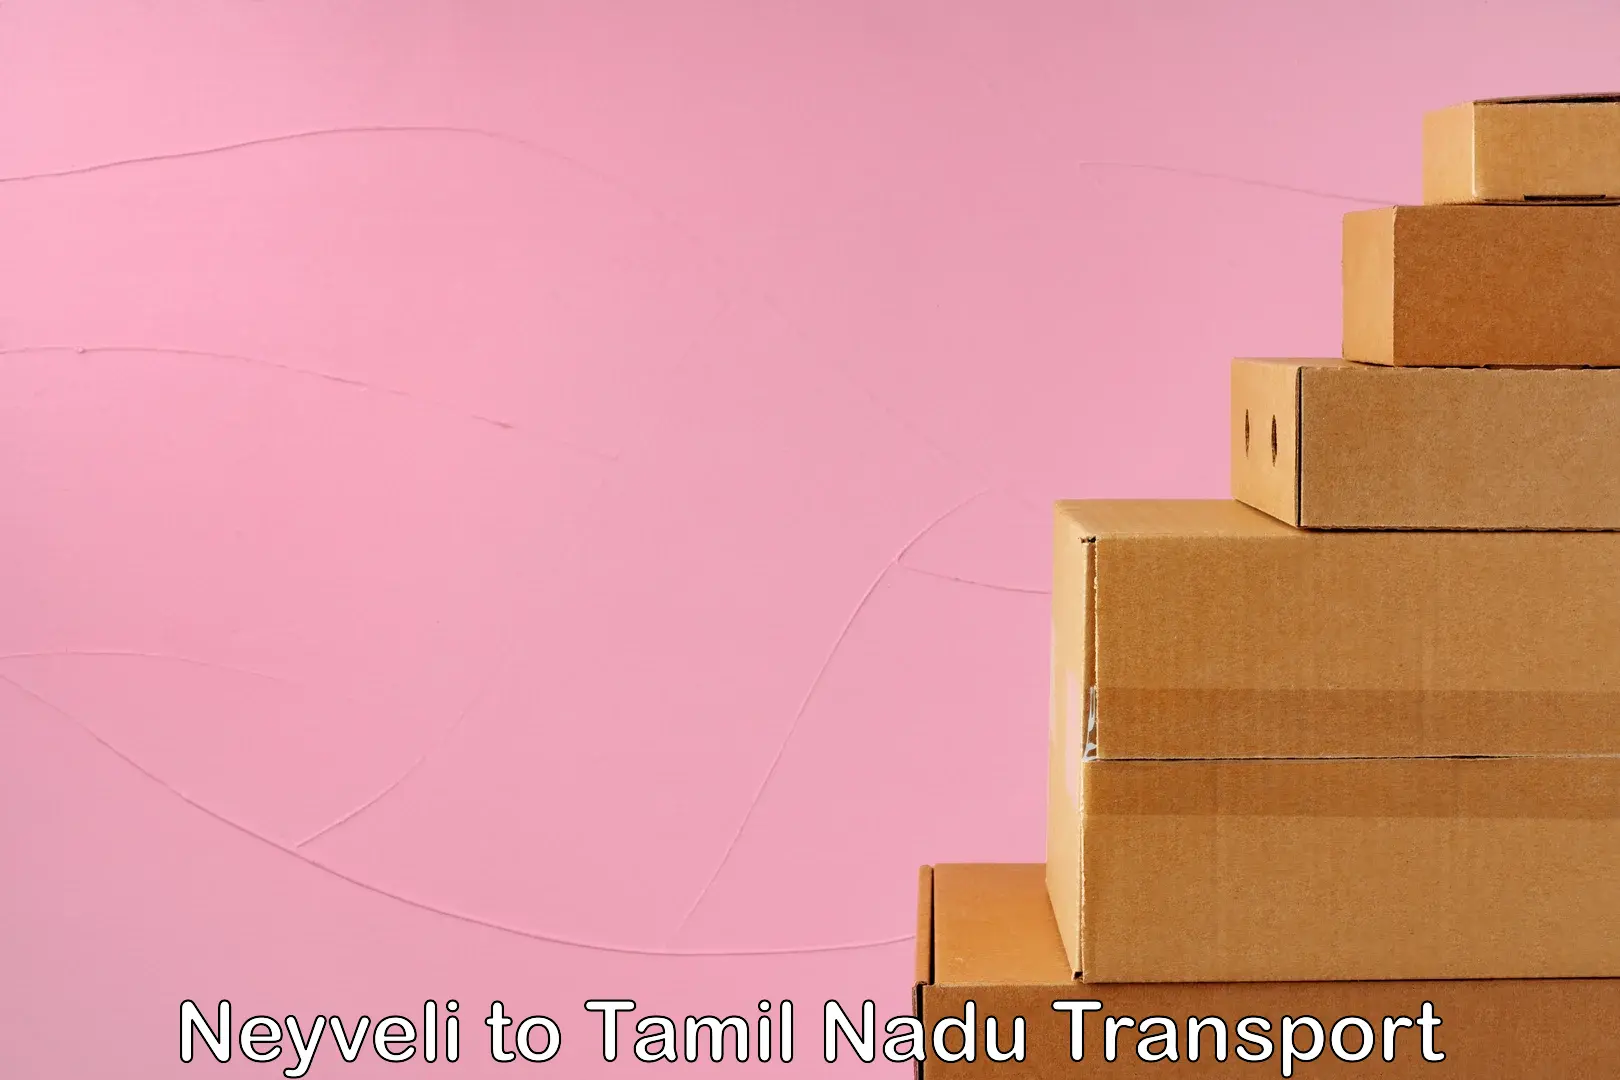 Nearest transport service Neyveli to Korattur